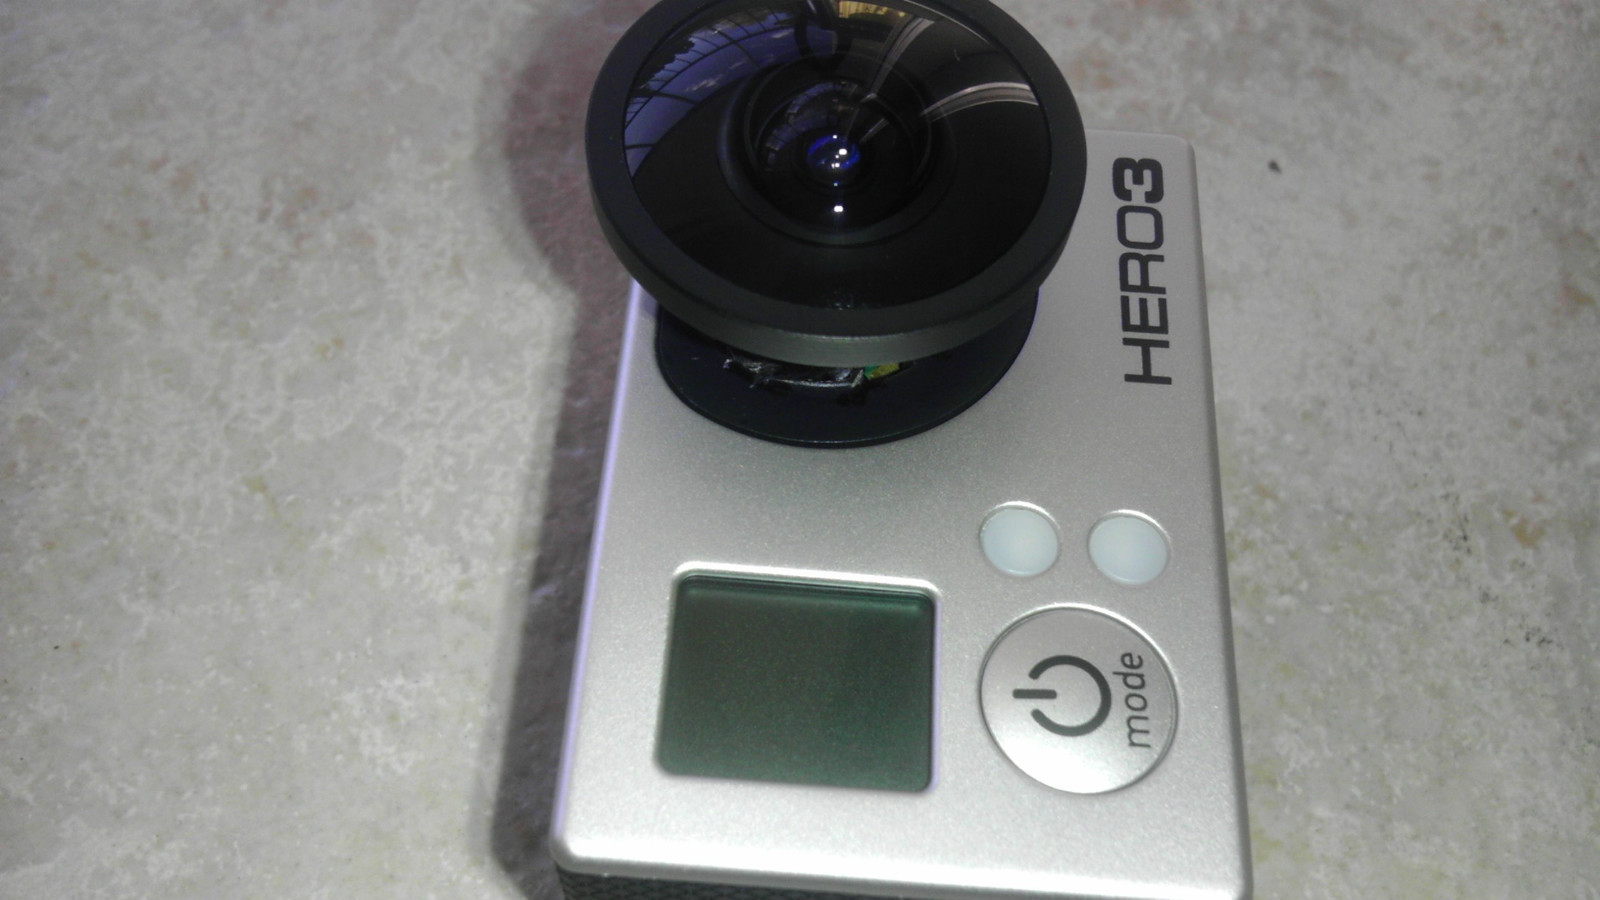 1.4mm circular fish eye lens for hero3 panoramic view